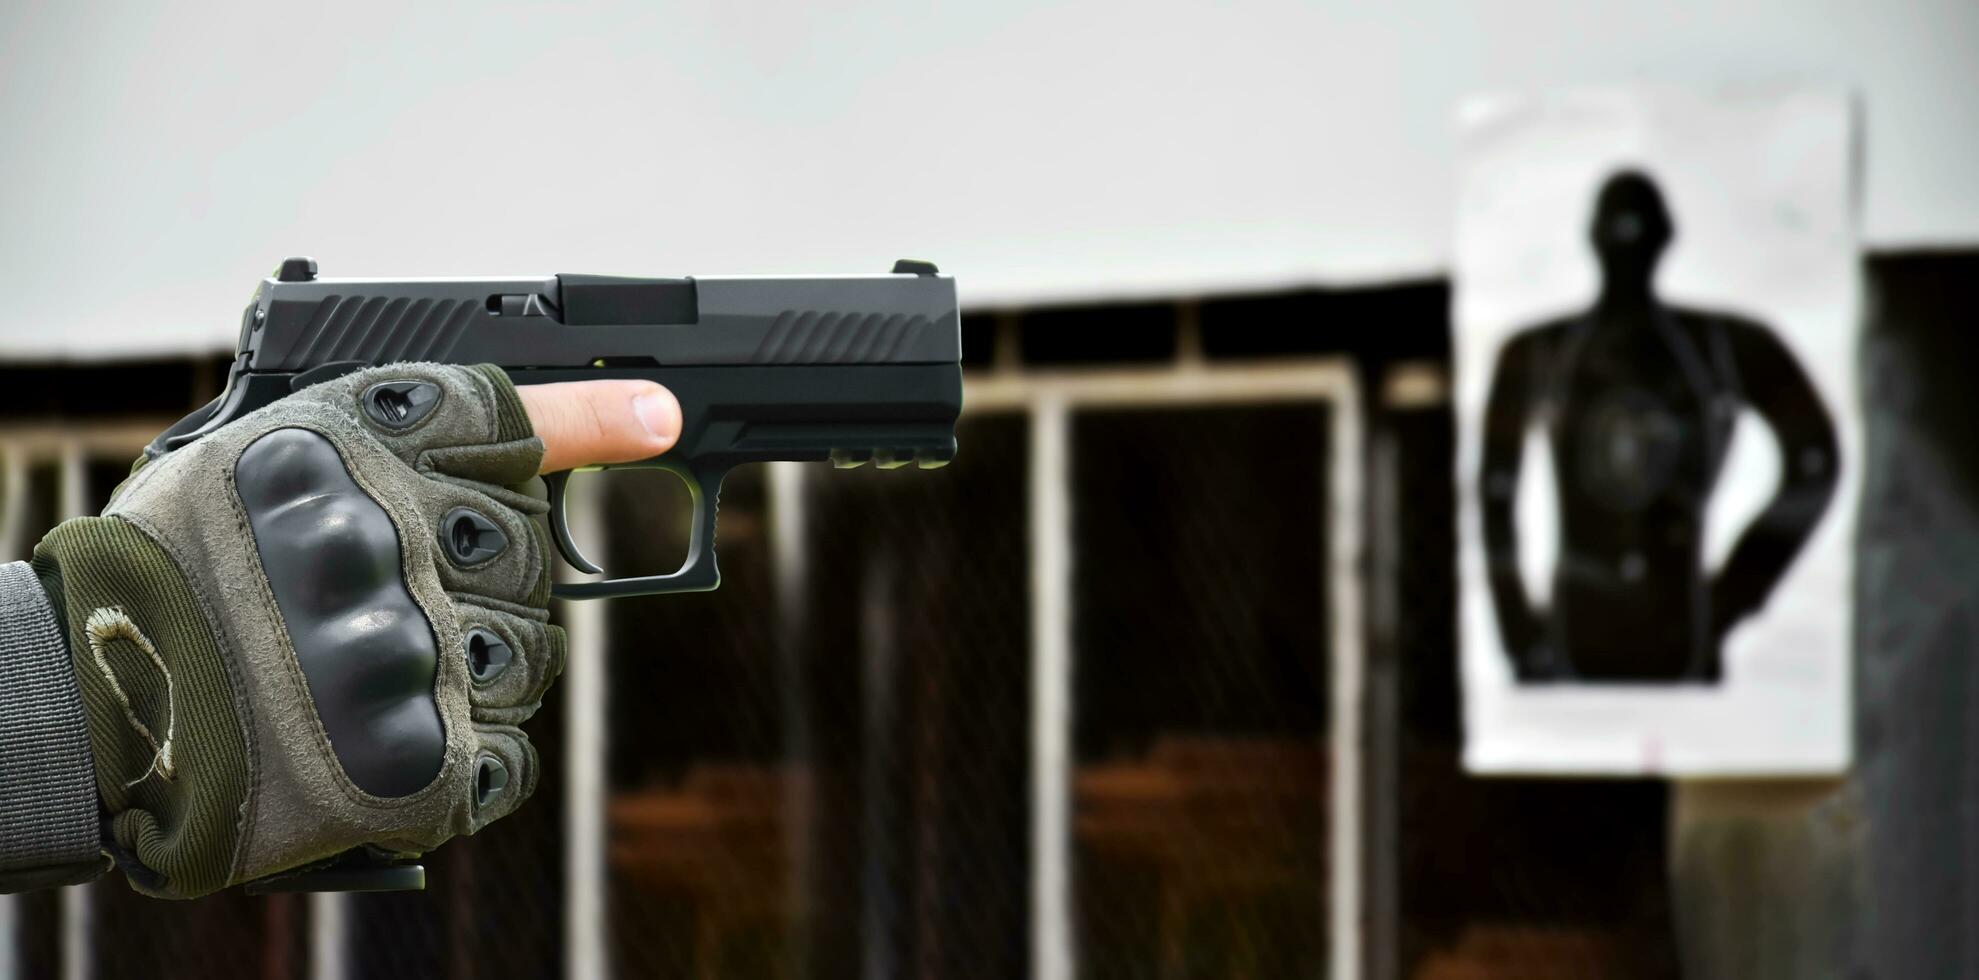 9 mm automatisch pistool in de rechterhand van de schutter, concept voor beveiliging, overval, gangster, lijfwacht over de hele wereld. selectieve focus op pistool. foto